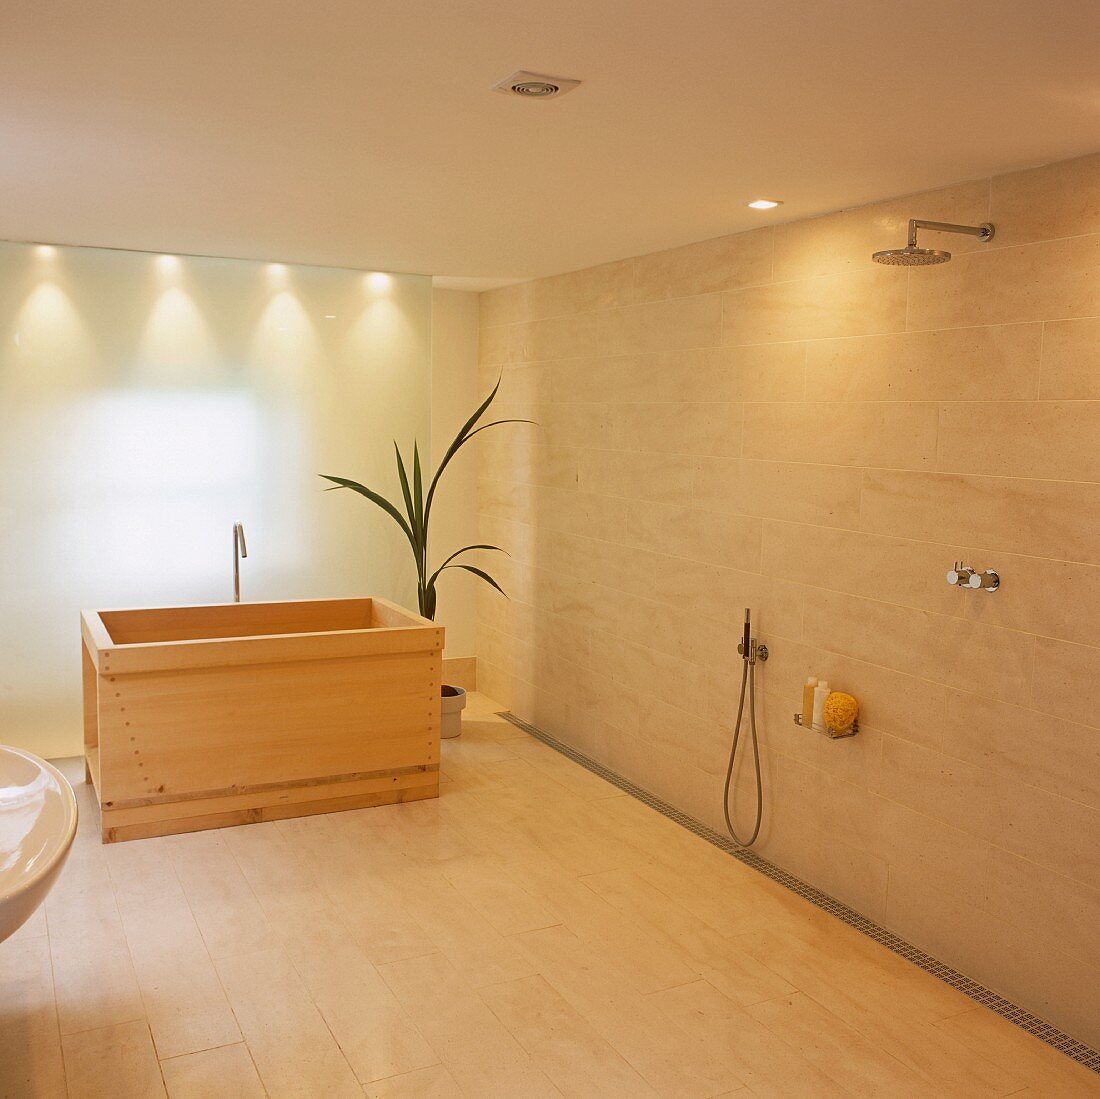 Ein eleganter Baderaum mit einem Holzbecken und Dusche